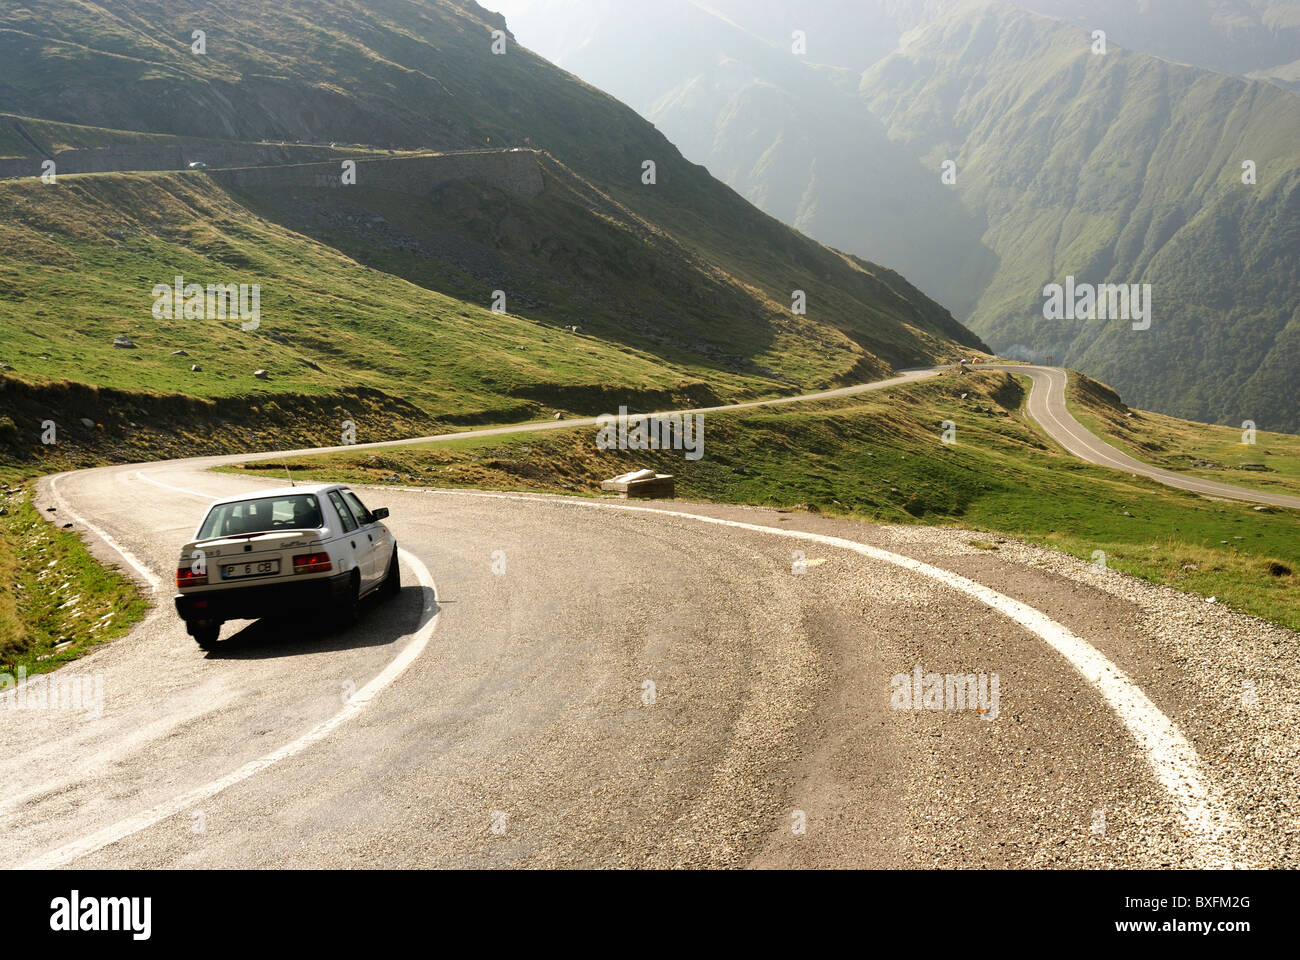 Car driving along the Transfagarasan road, Fagaras Mountains, Romania Stock Photo